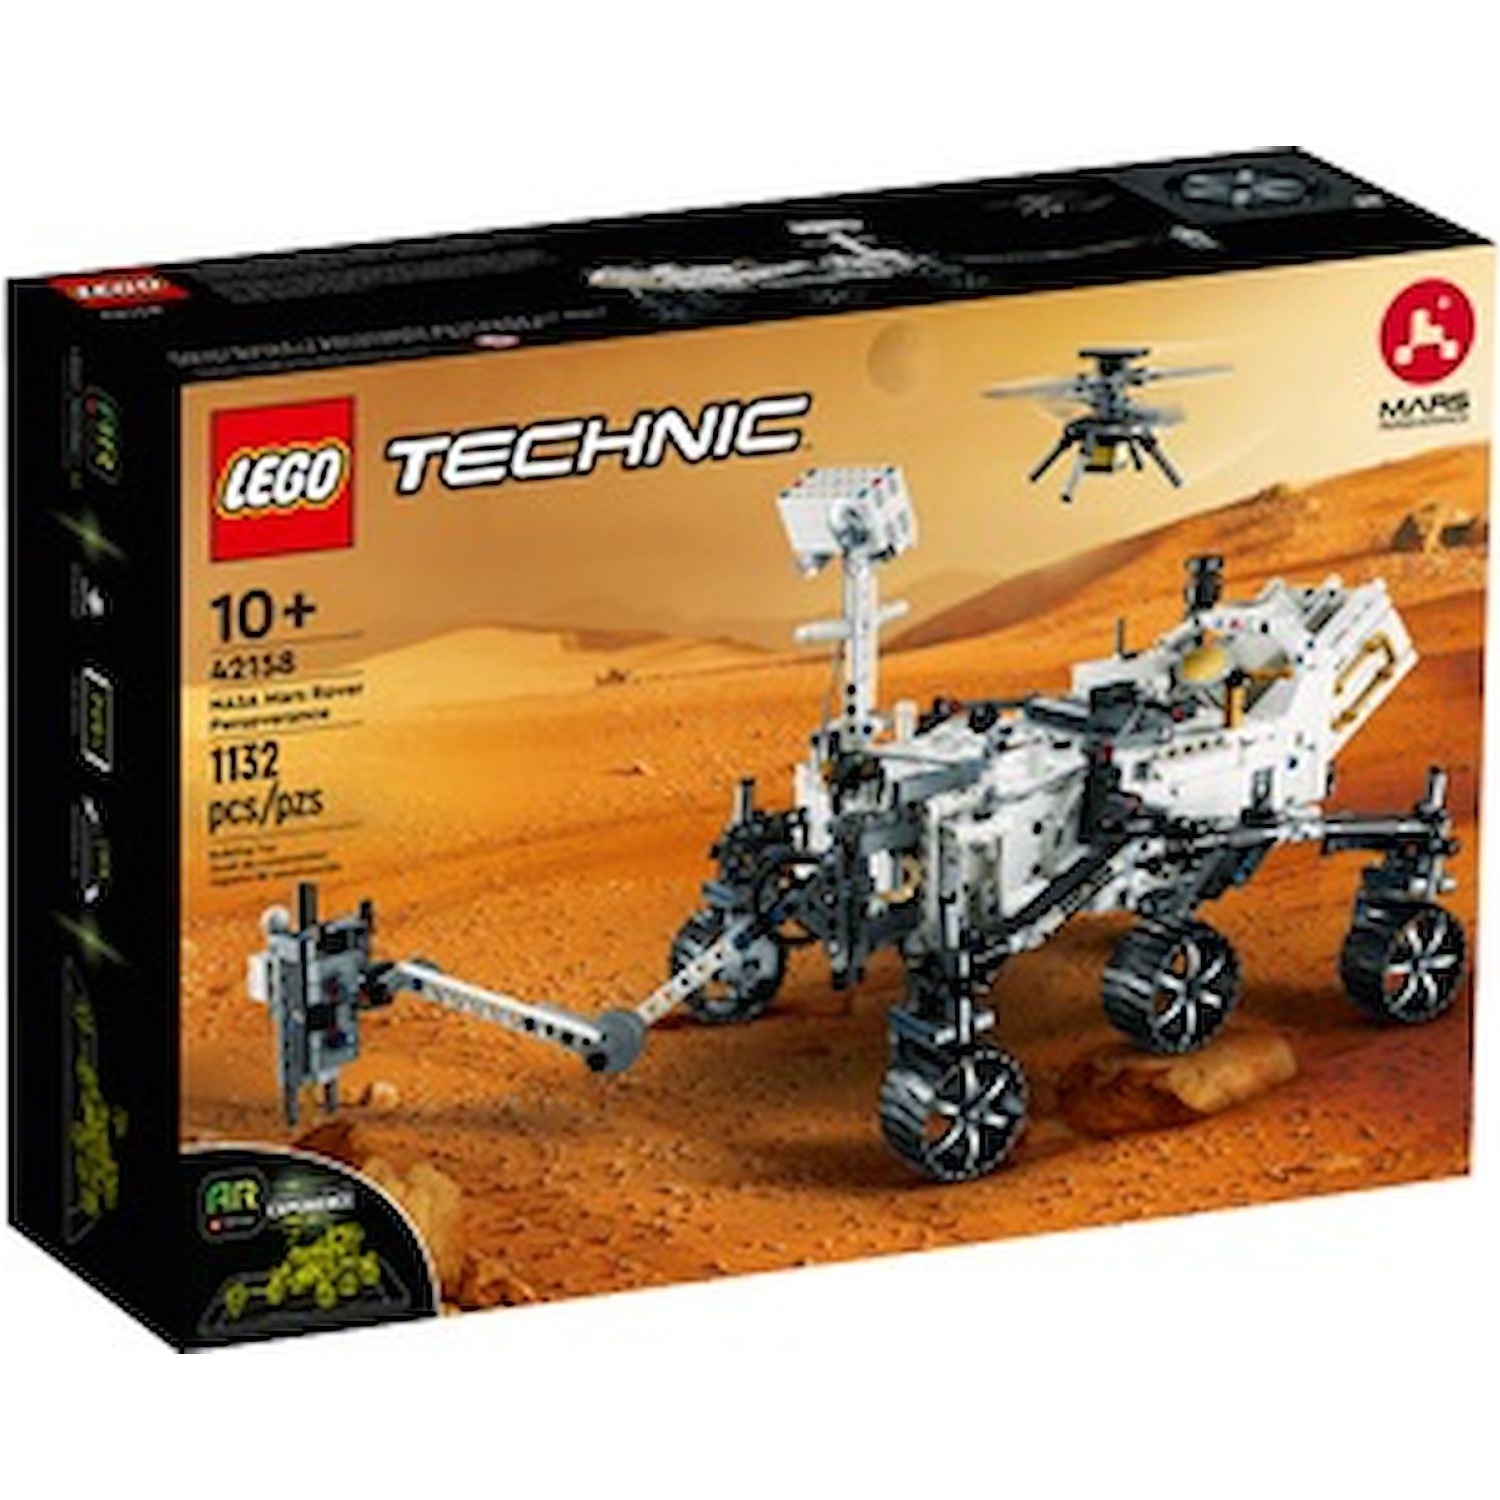 Immagine per Lego Technic Nasa Mars Rover Perseverance da DIMOStore